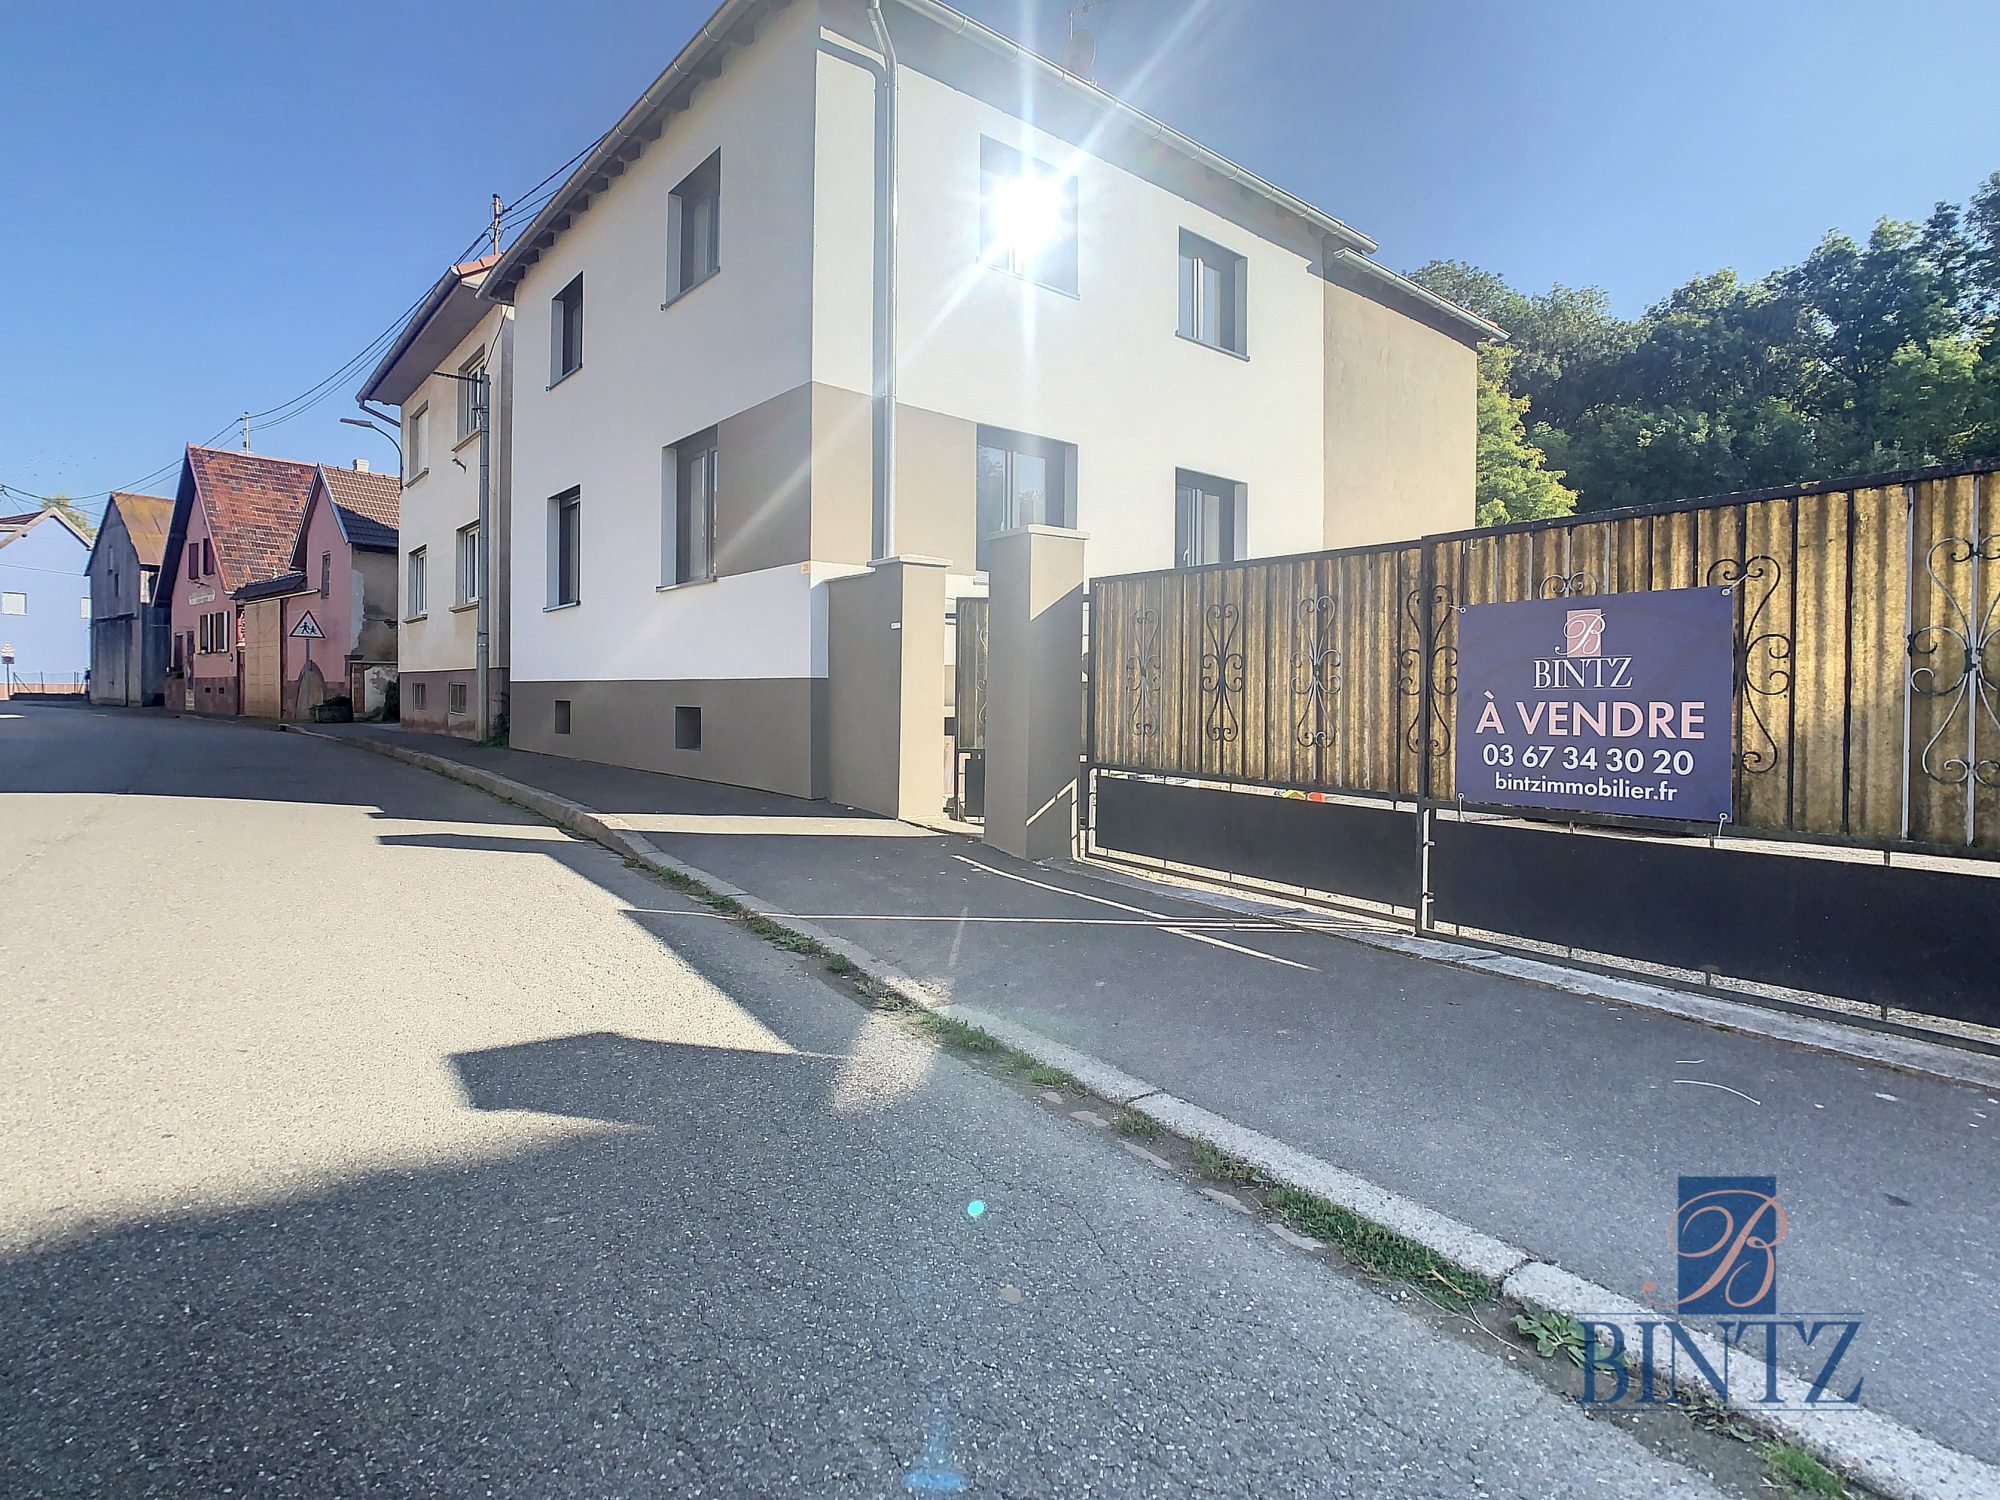 Maison 5 pièces rénovée en 2021 - vente immobilière - Bintz Immobilier - 8